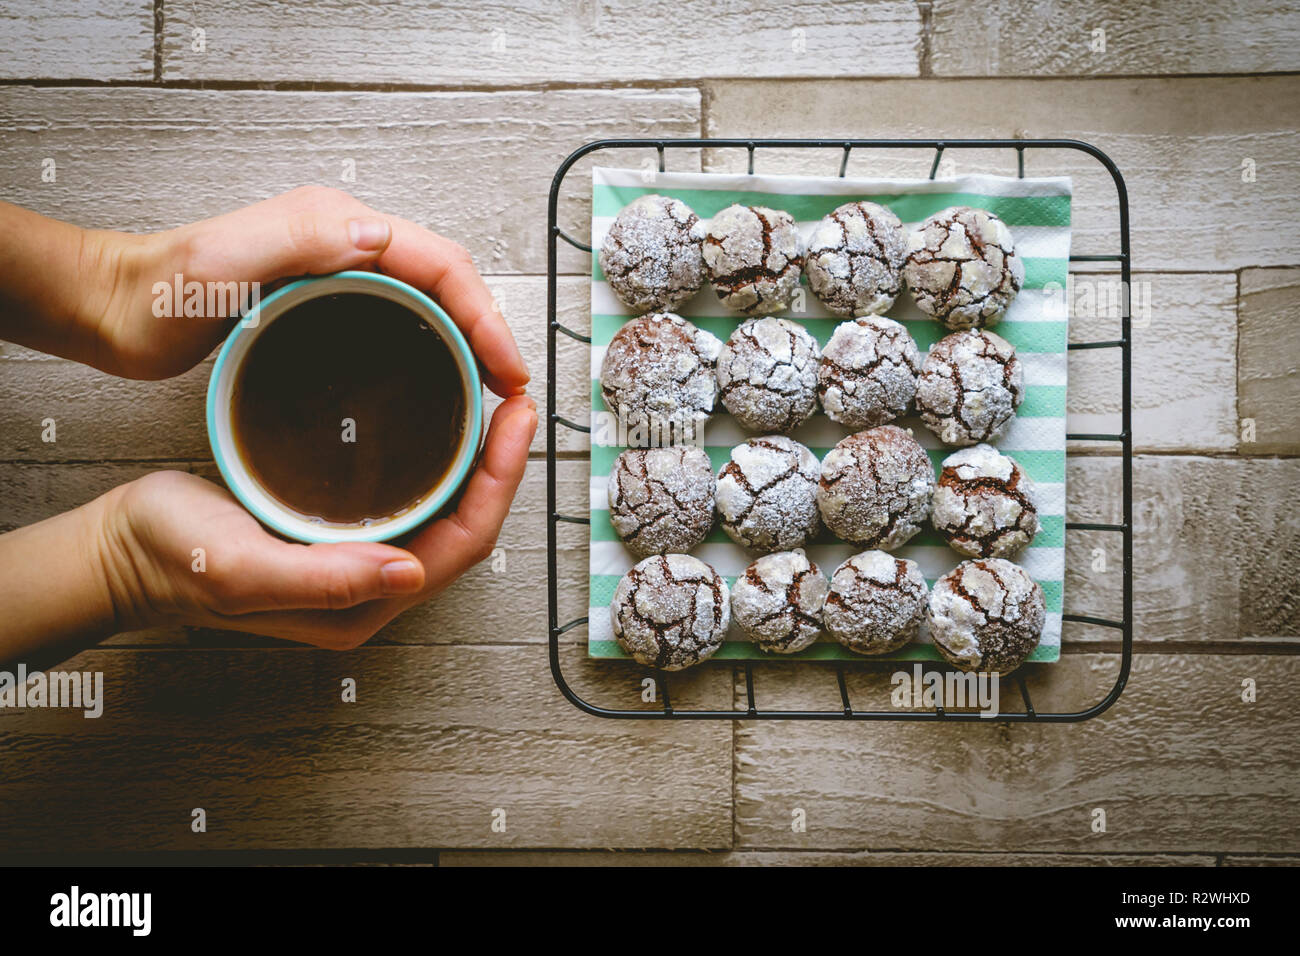 Schokolade crinkle Cookies in einem Korb mit einer Tasse Kaffee halten die Hände auf einen hölzernen Tisch. Ansicht von oben. Querformat. Stockfoto